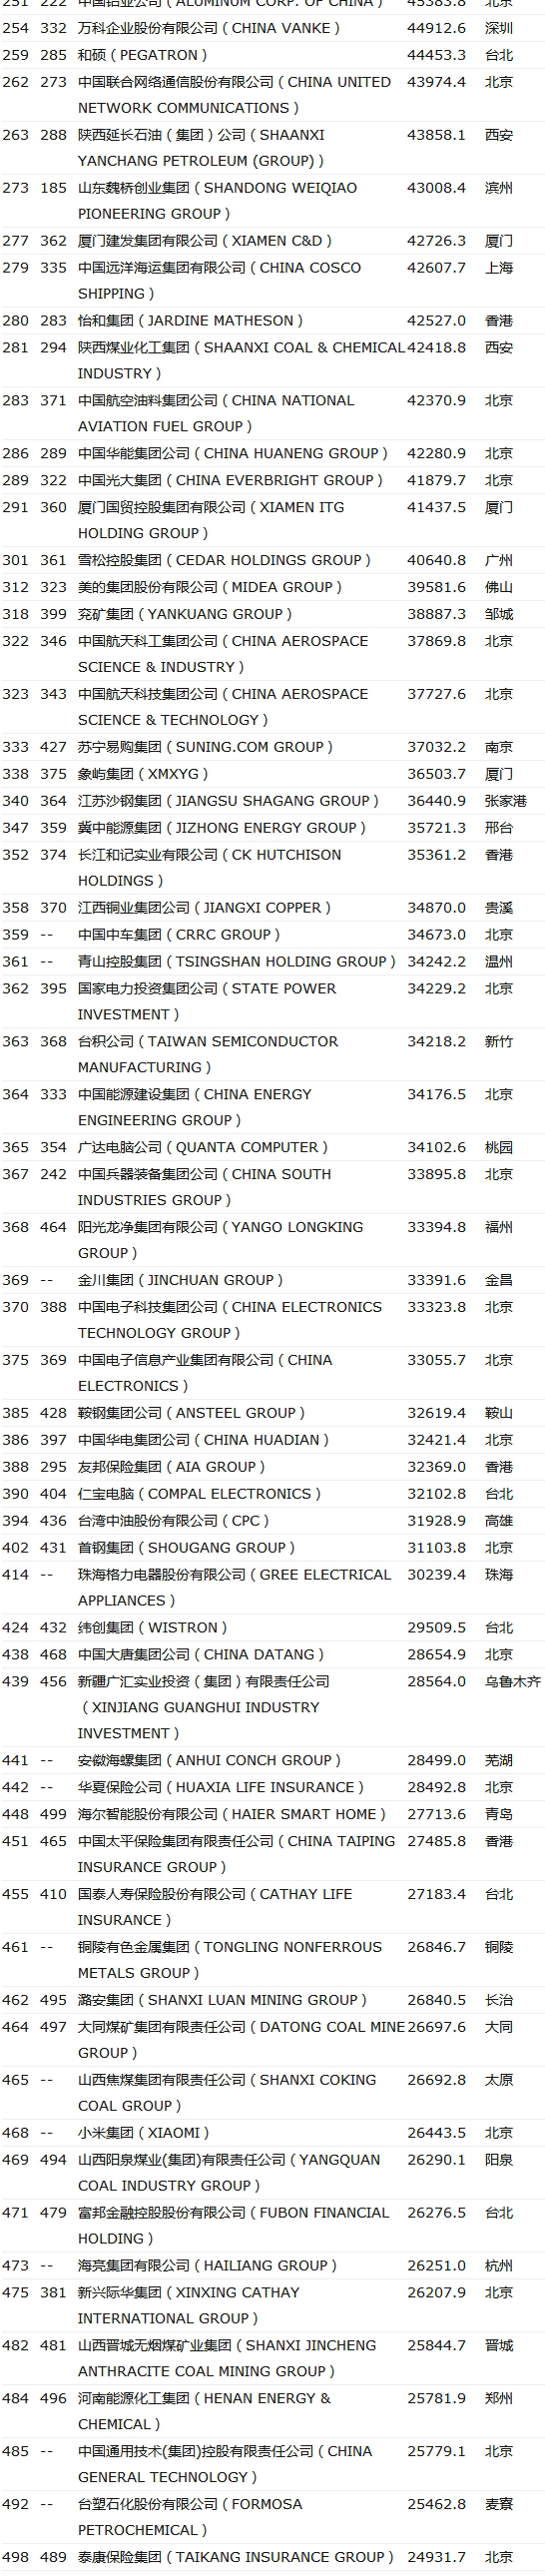 中国上榜世界500强公司数，首次超过美国495 / 作者:一条龙 / 帖子ID:268308